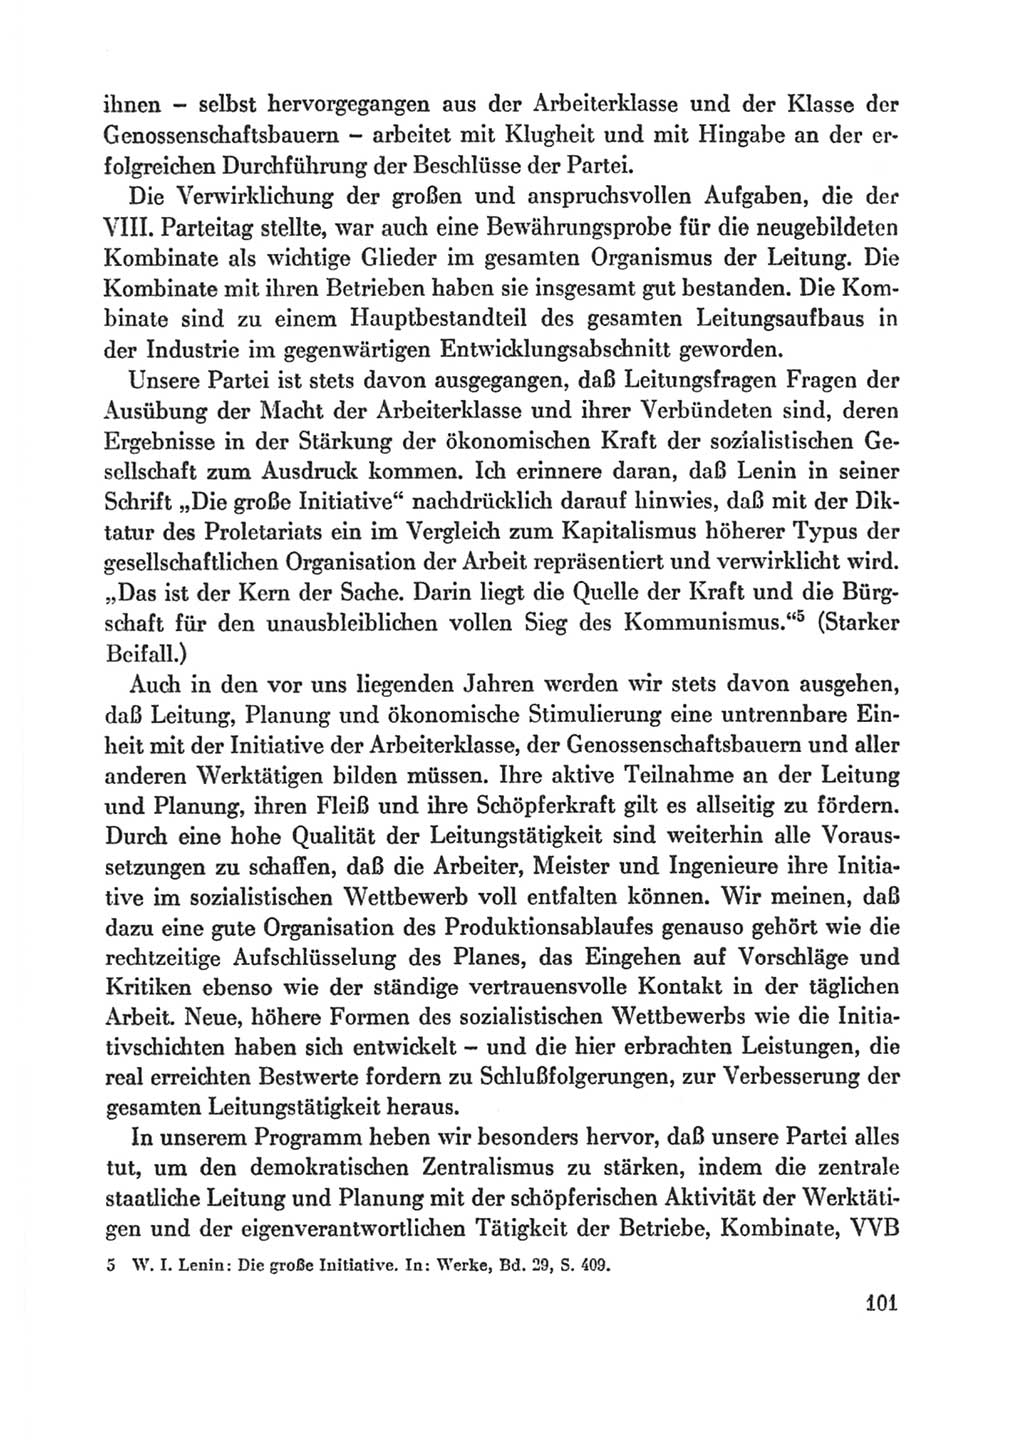 Protokoll der Verhandlungen des Ⅸ. Parteitages der Sozialistischen Einheitspartei Deutschlands (SED) [Deutsche Demokratische Republik (DDR)] 1976, Band 1, Seite 101 (Prot. Verh. Ⅸ. PT SED DDR 1976, Bd. 1, S. 101)